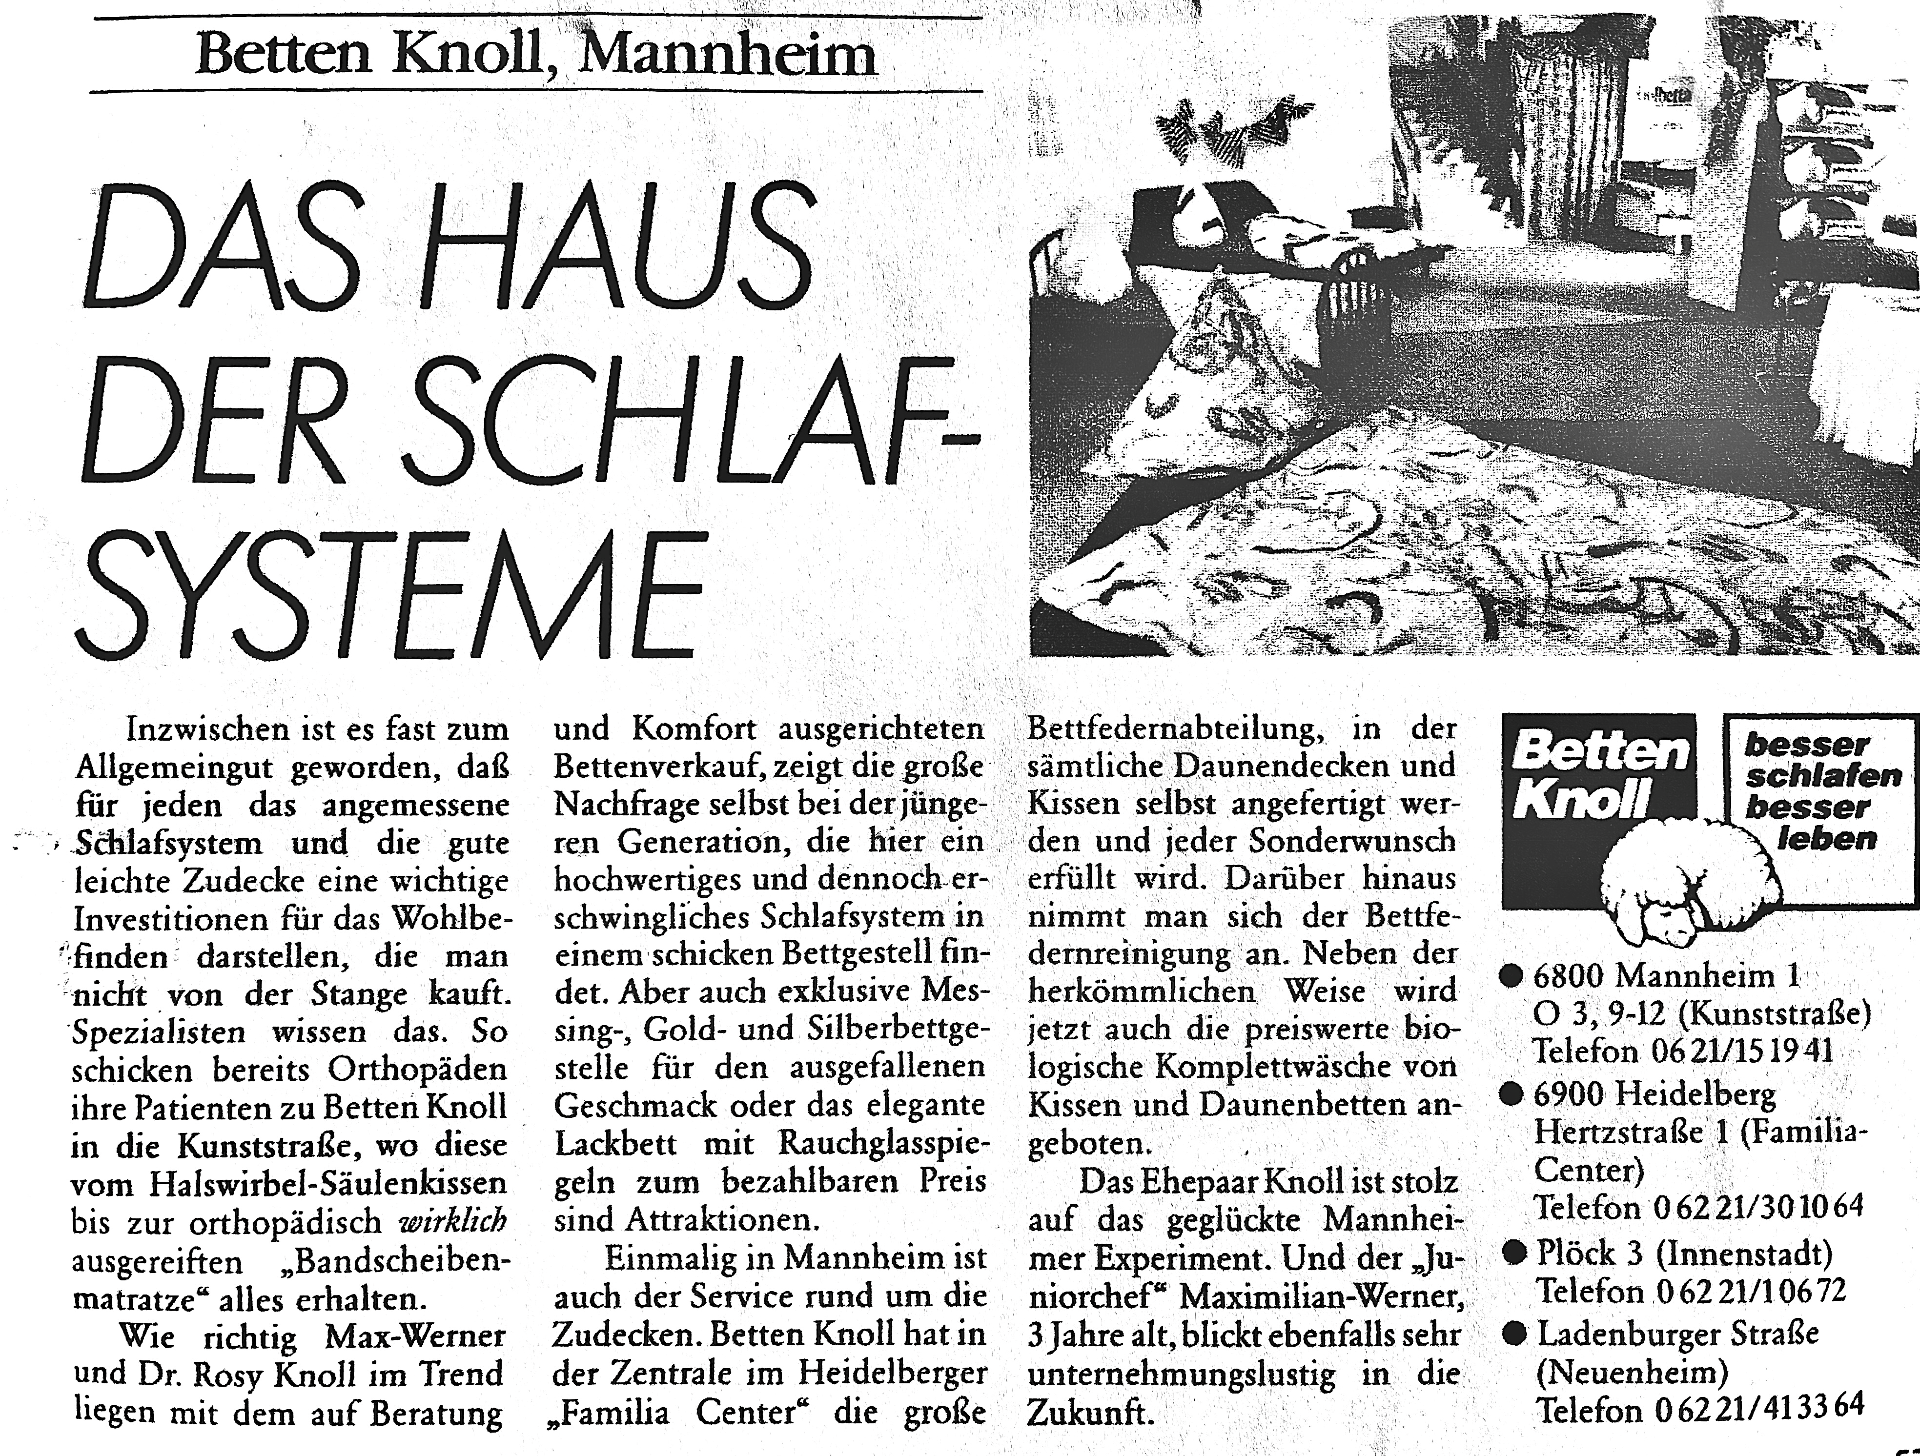 Auszug aus Exquisit Herbst 1991, Betten Knoll in Mannheim